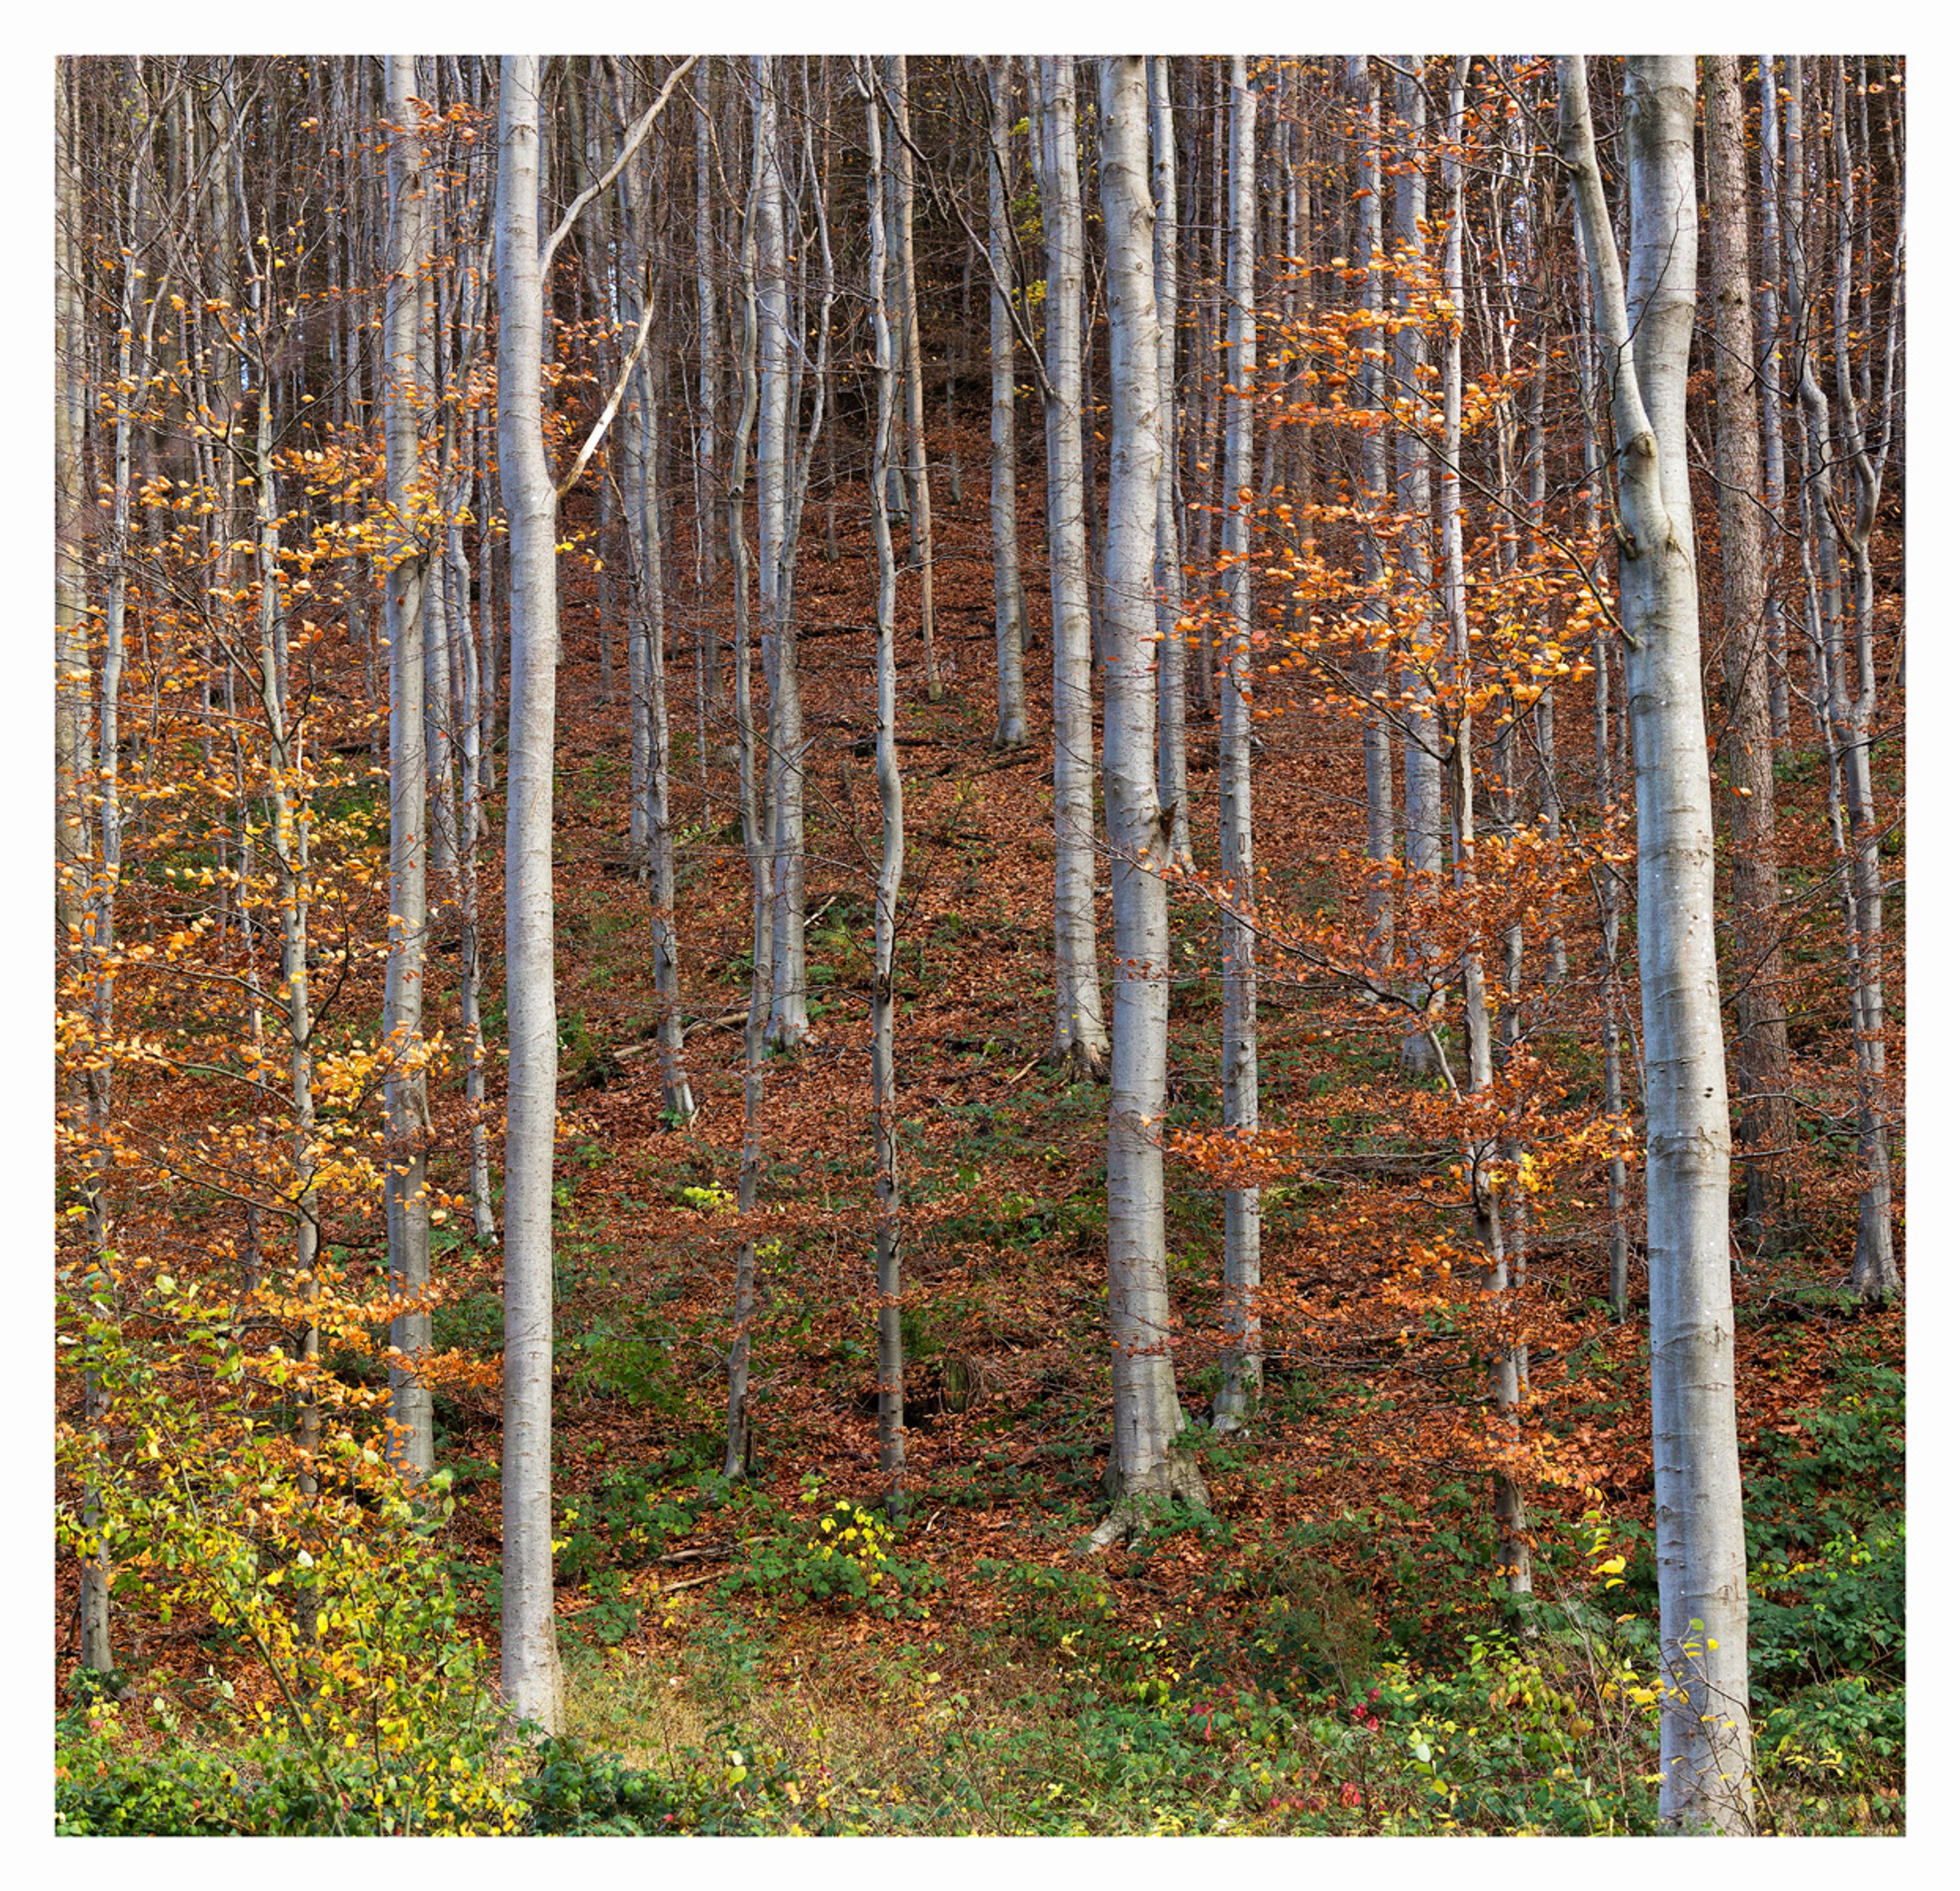 Autumn Woodland, Rievaulx by Antony Ward